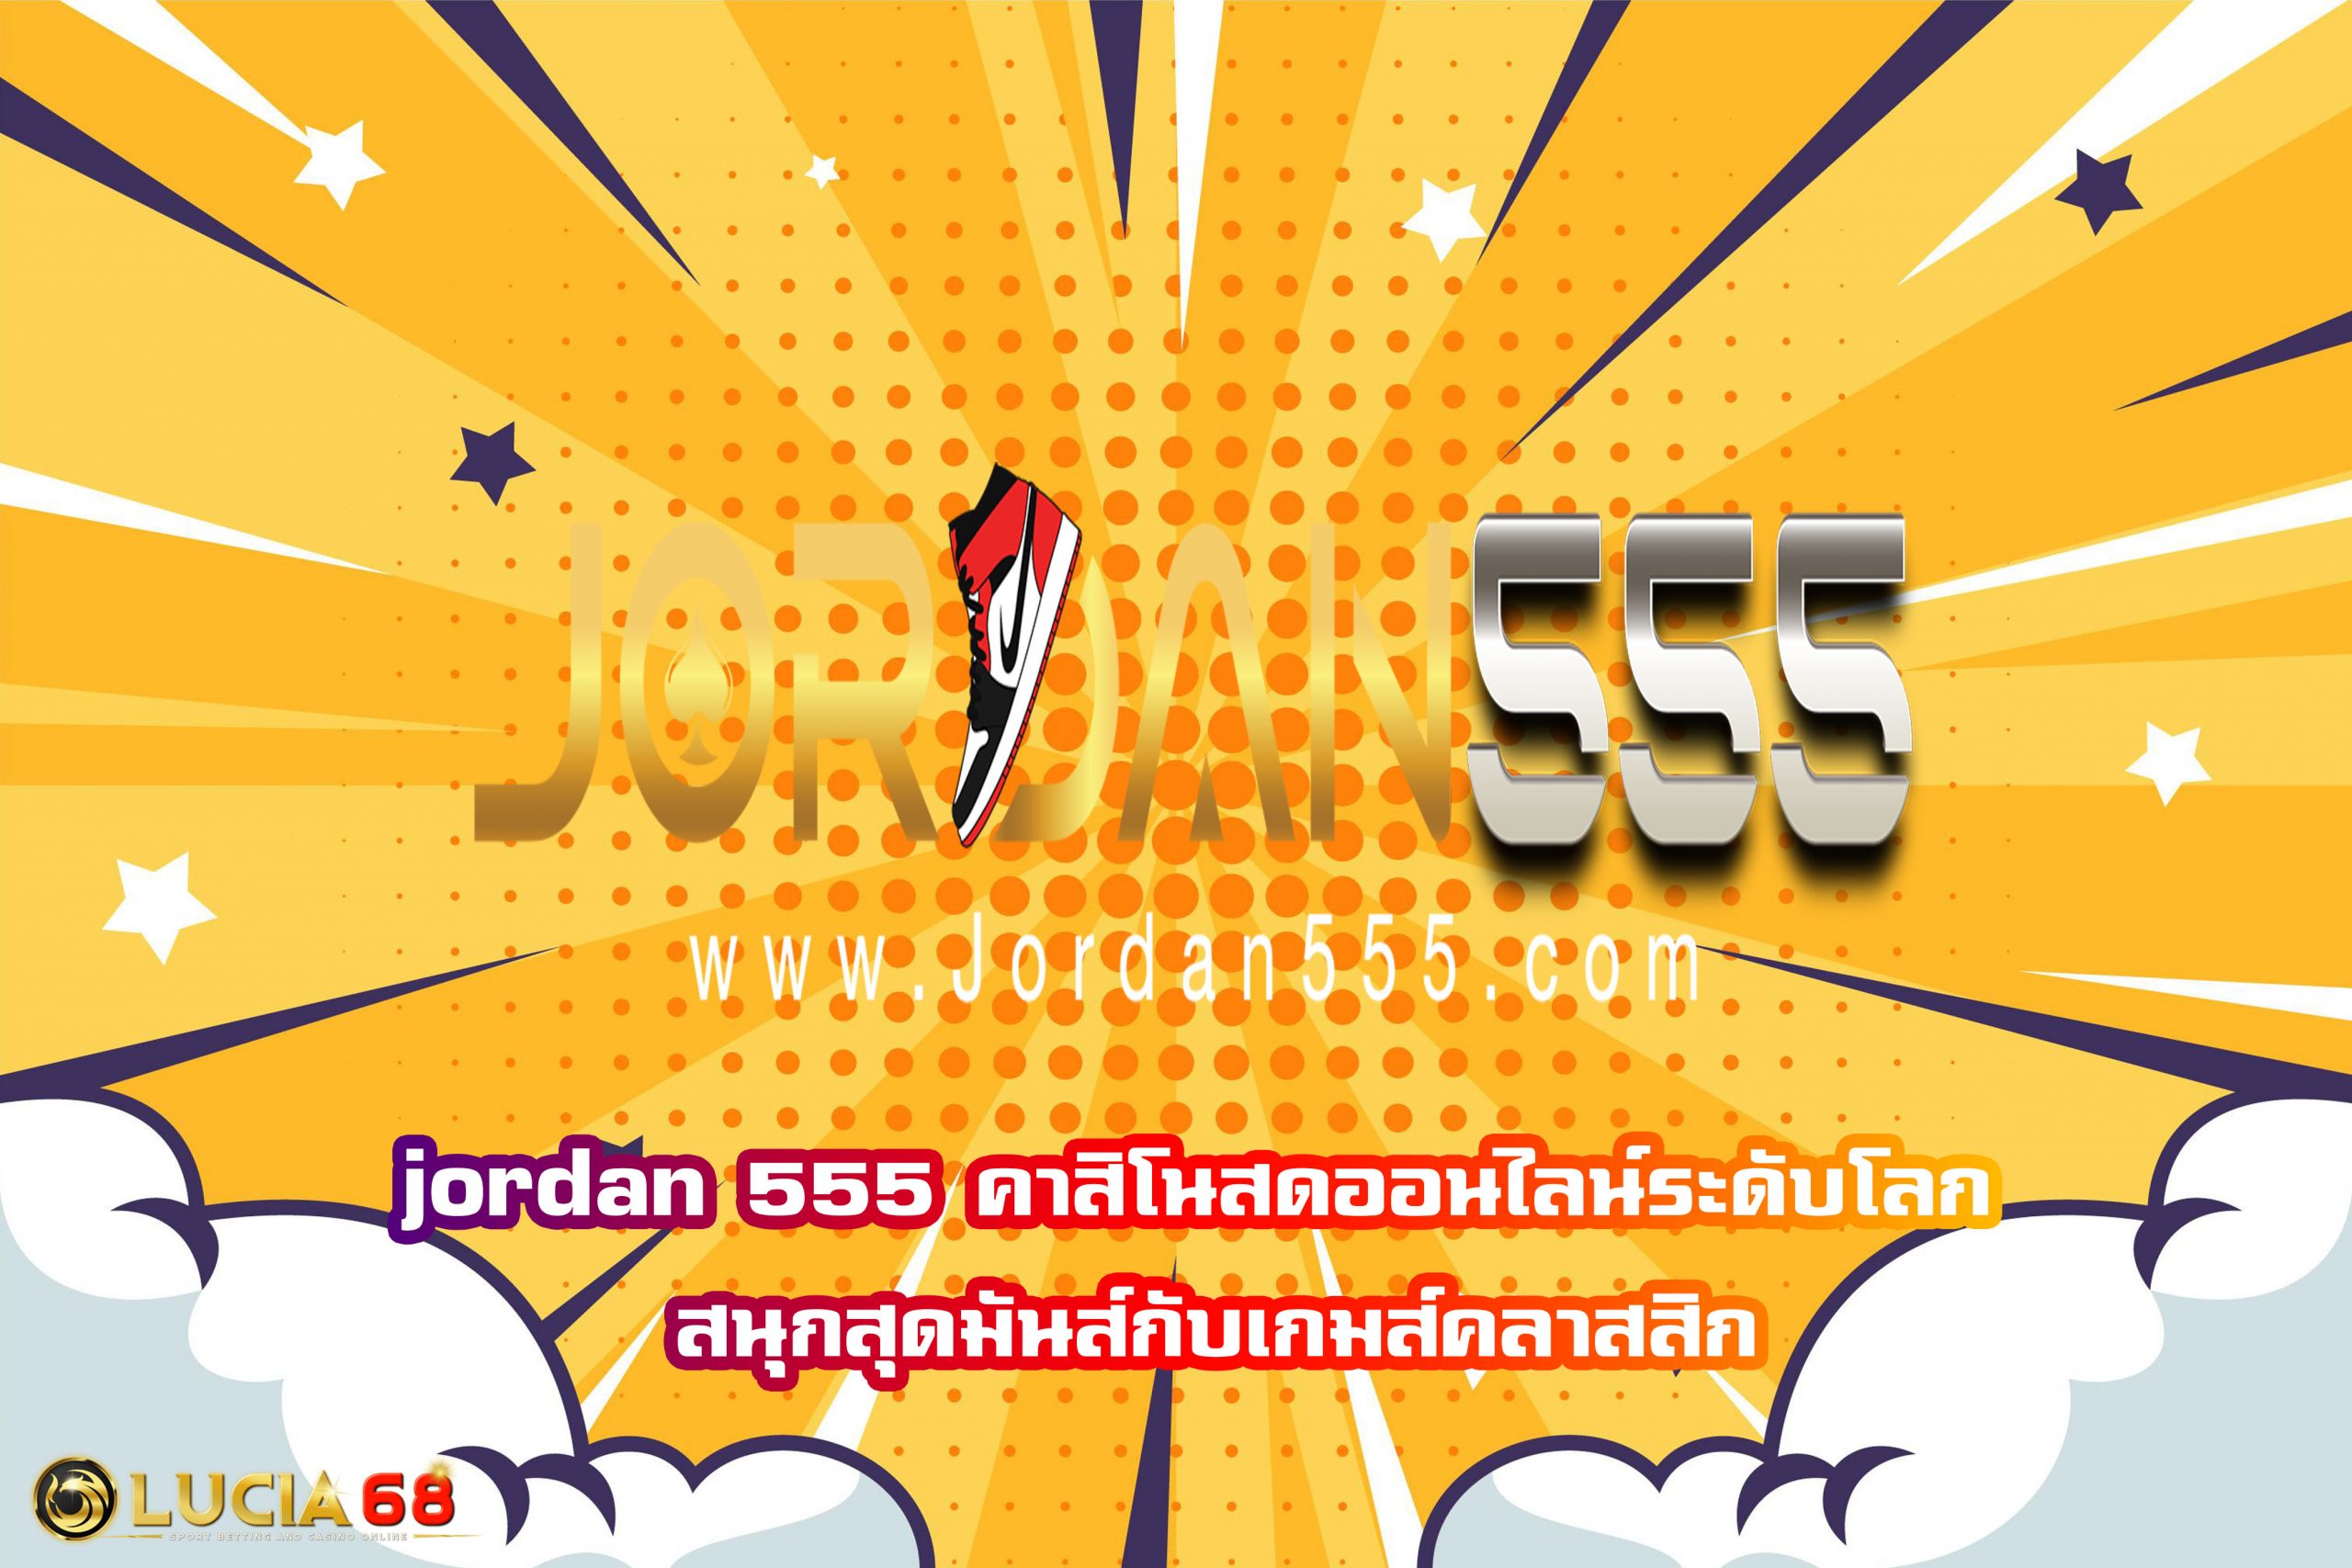 jordan 555 คาสิโนสดออนไลน์ระดับโลก สนุกสุดมันส์กับเกมส์คลาสสิก